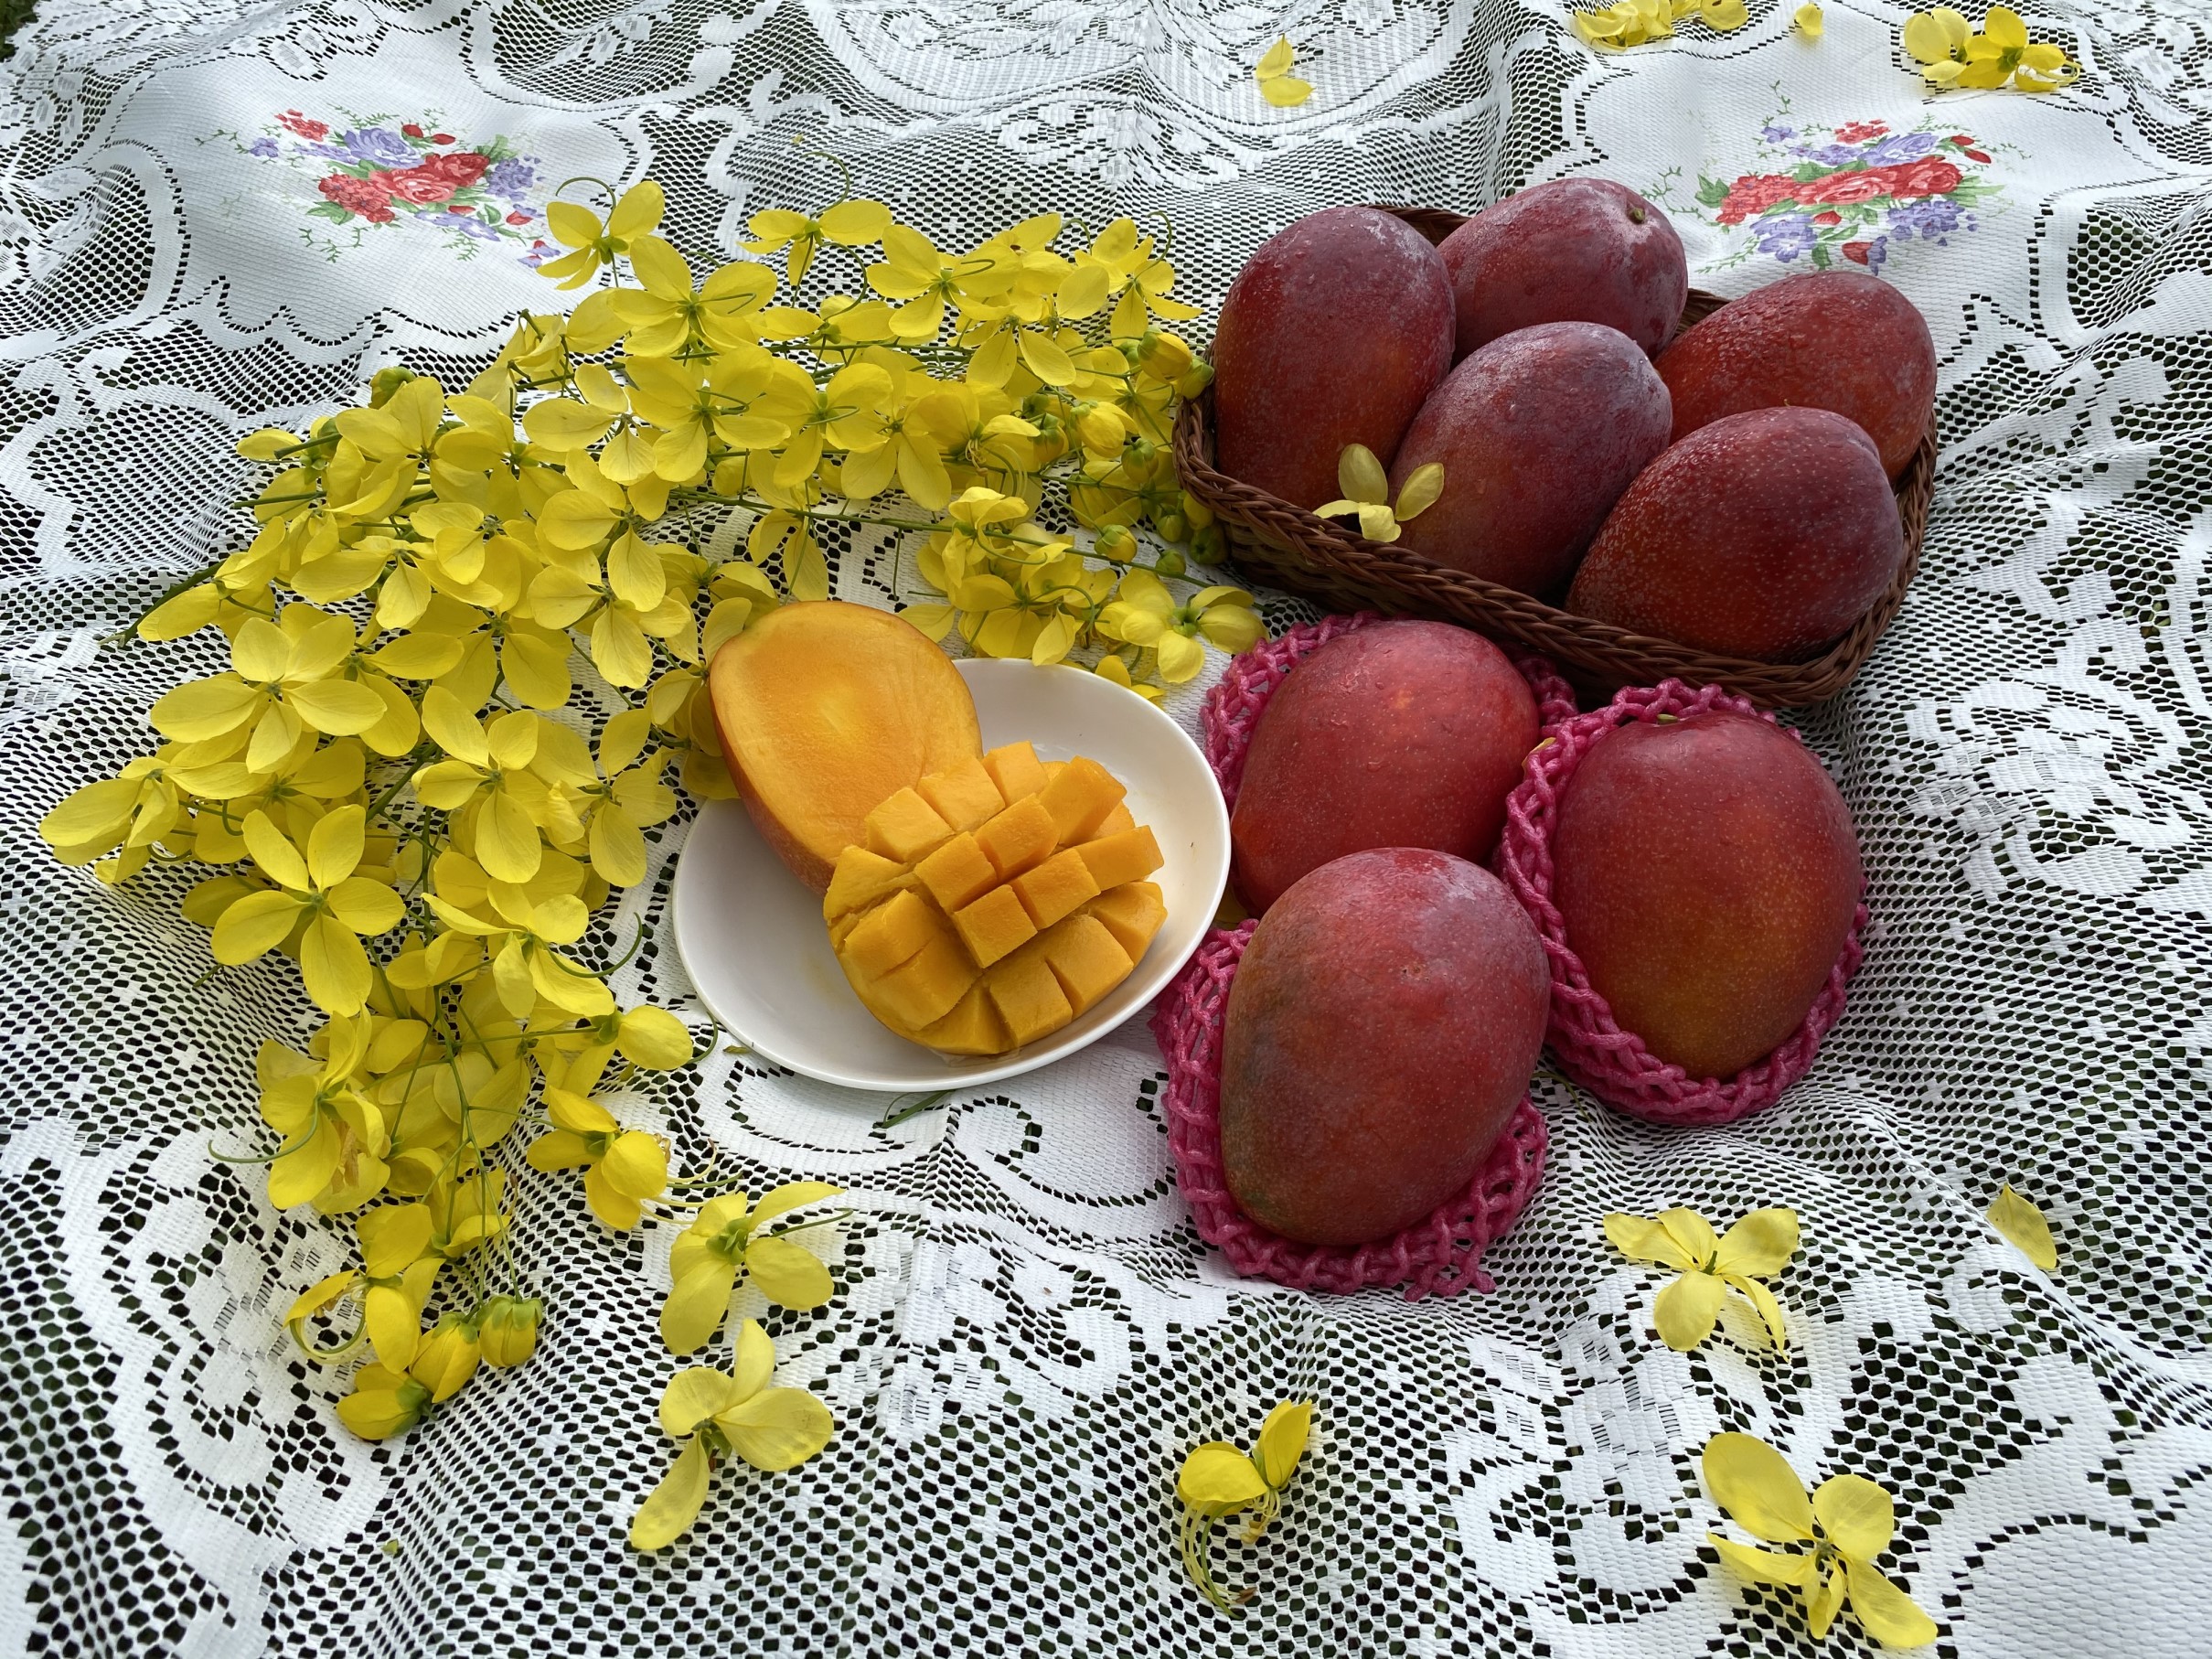 夏日為品嚐芒果的最佳時機